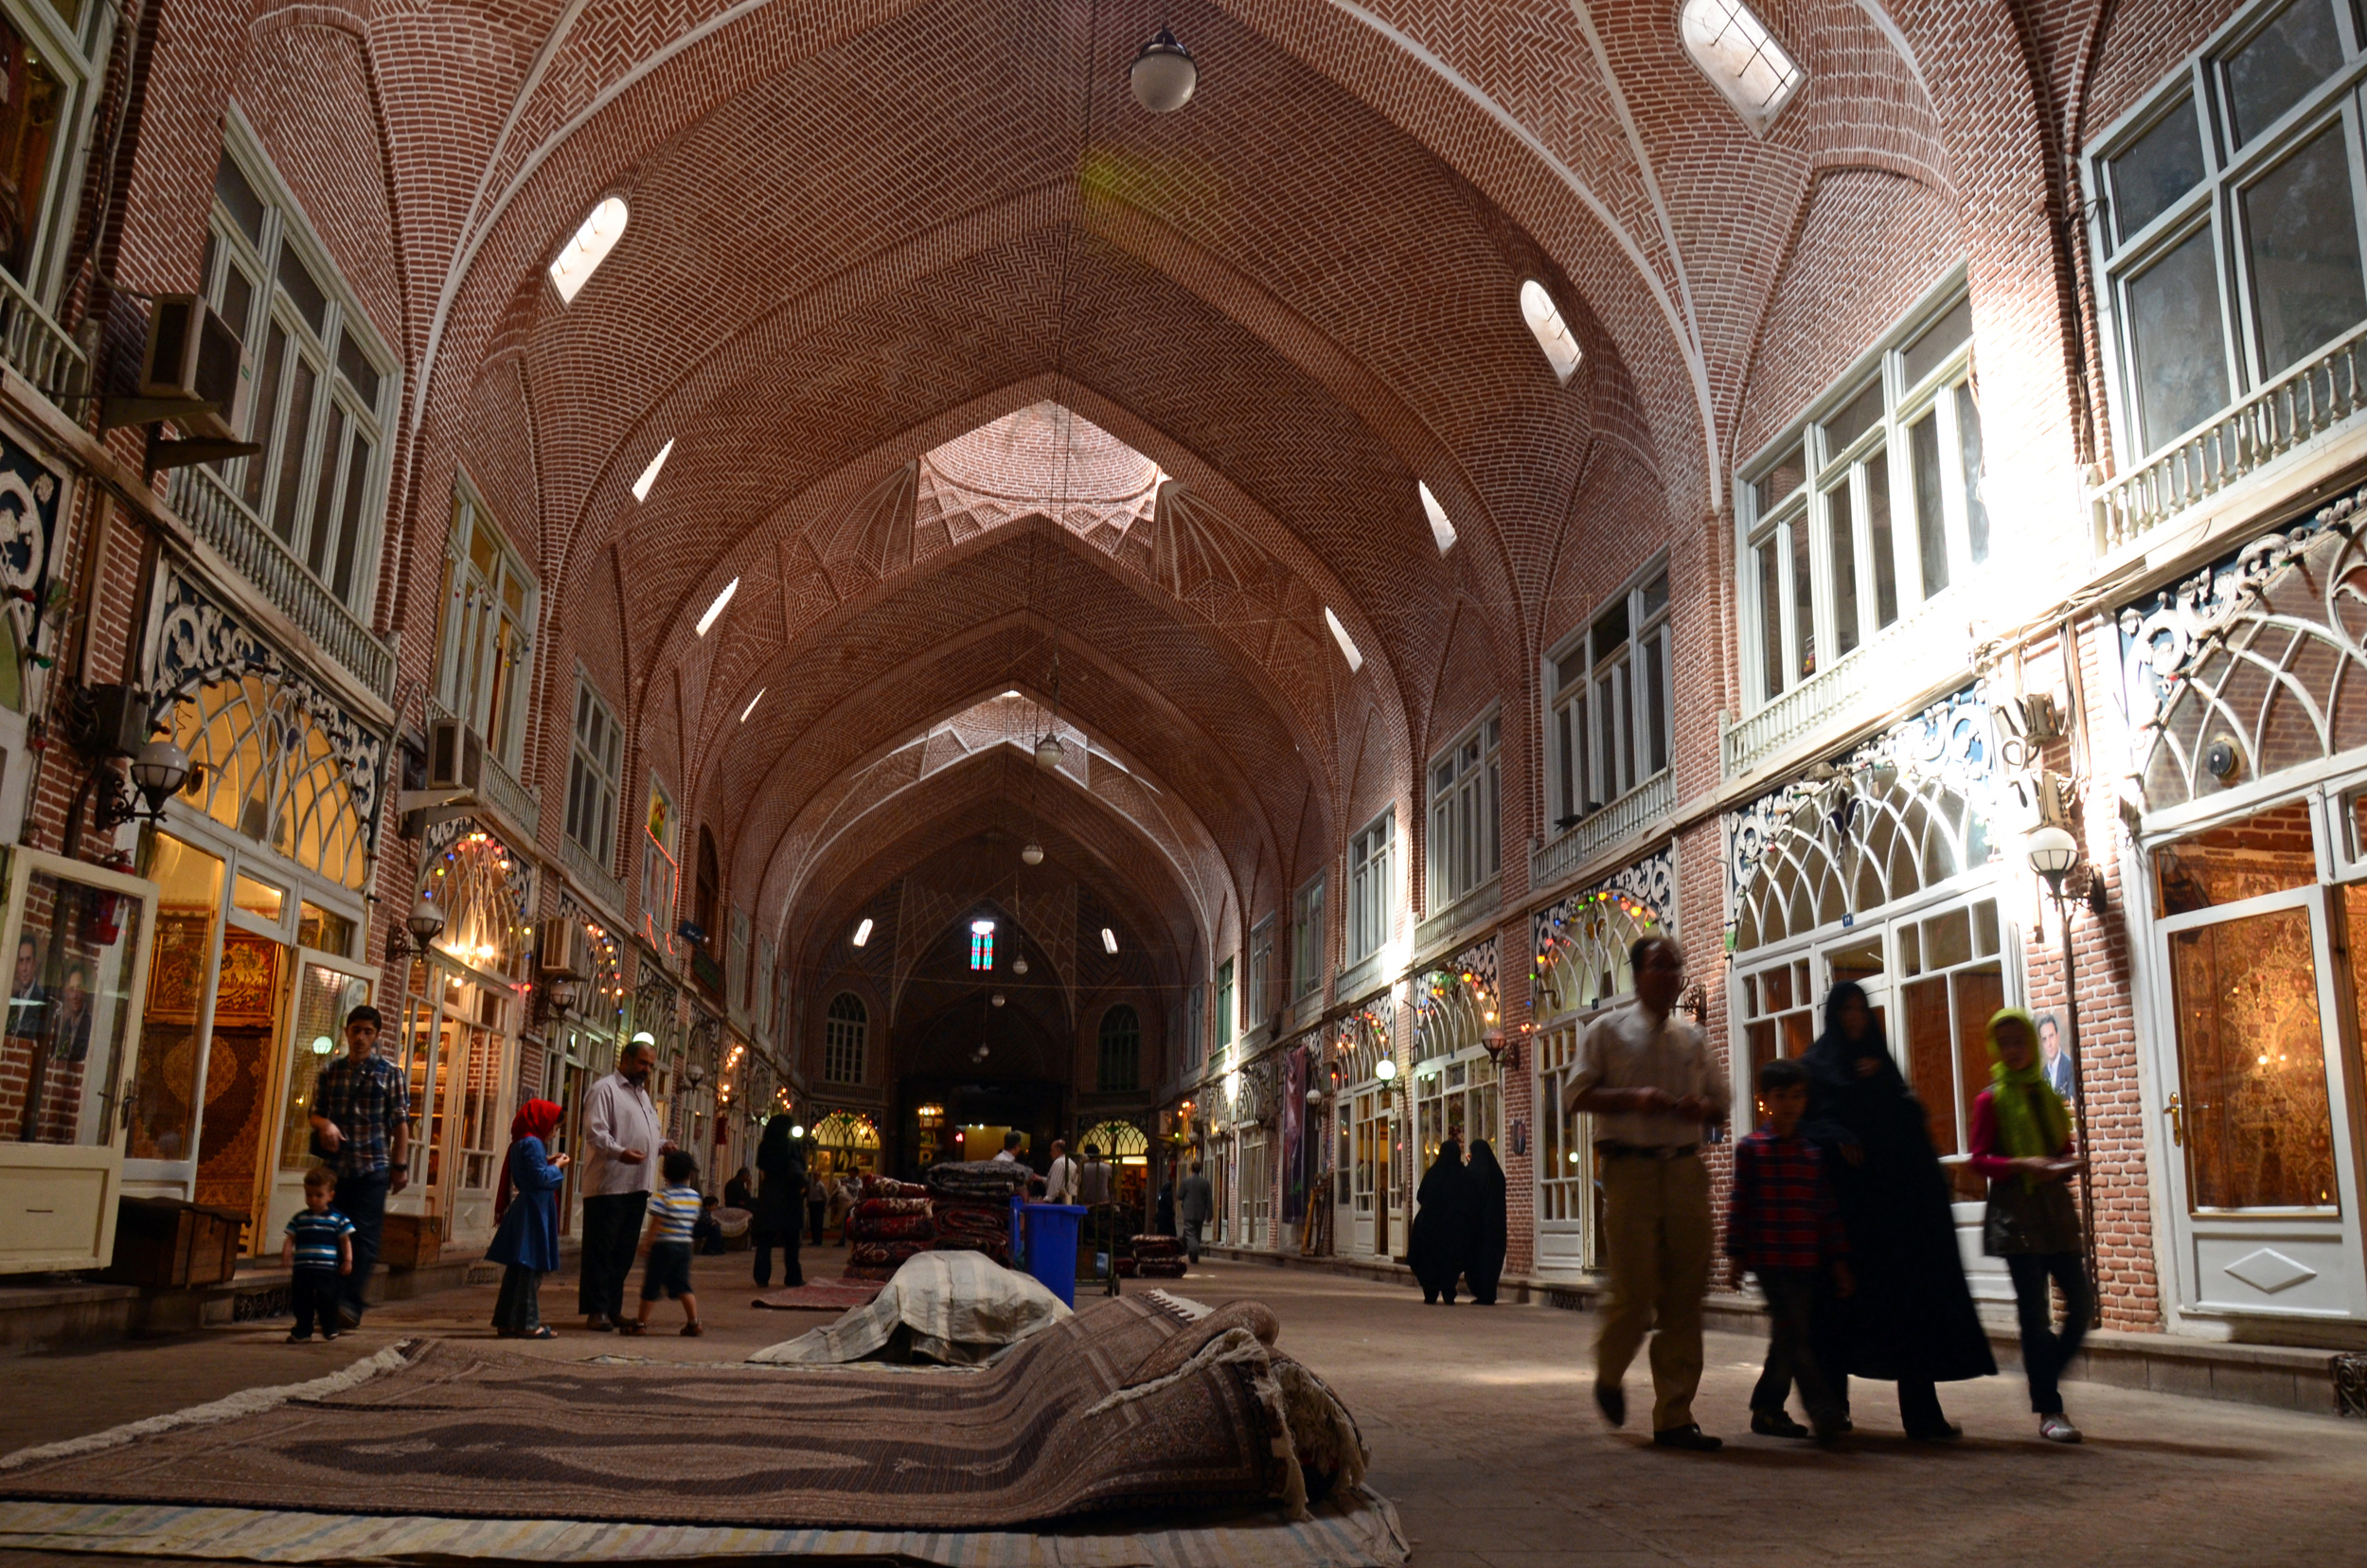 احتمال زیاد آتش سوزی در یکی از بزرگترین بازارهای سنتی ایران